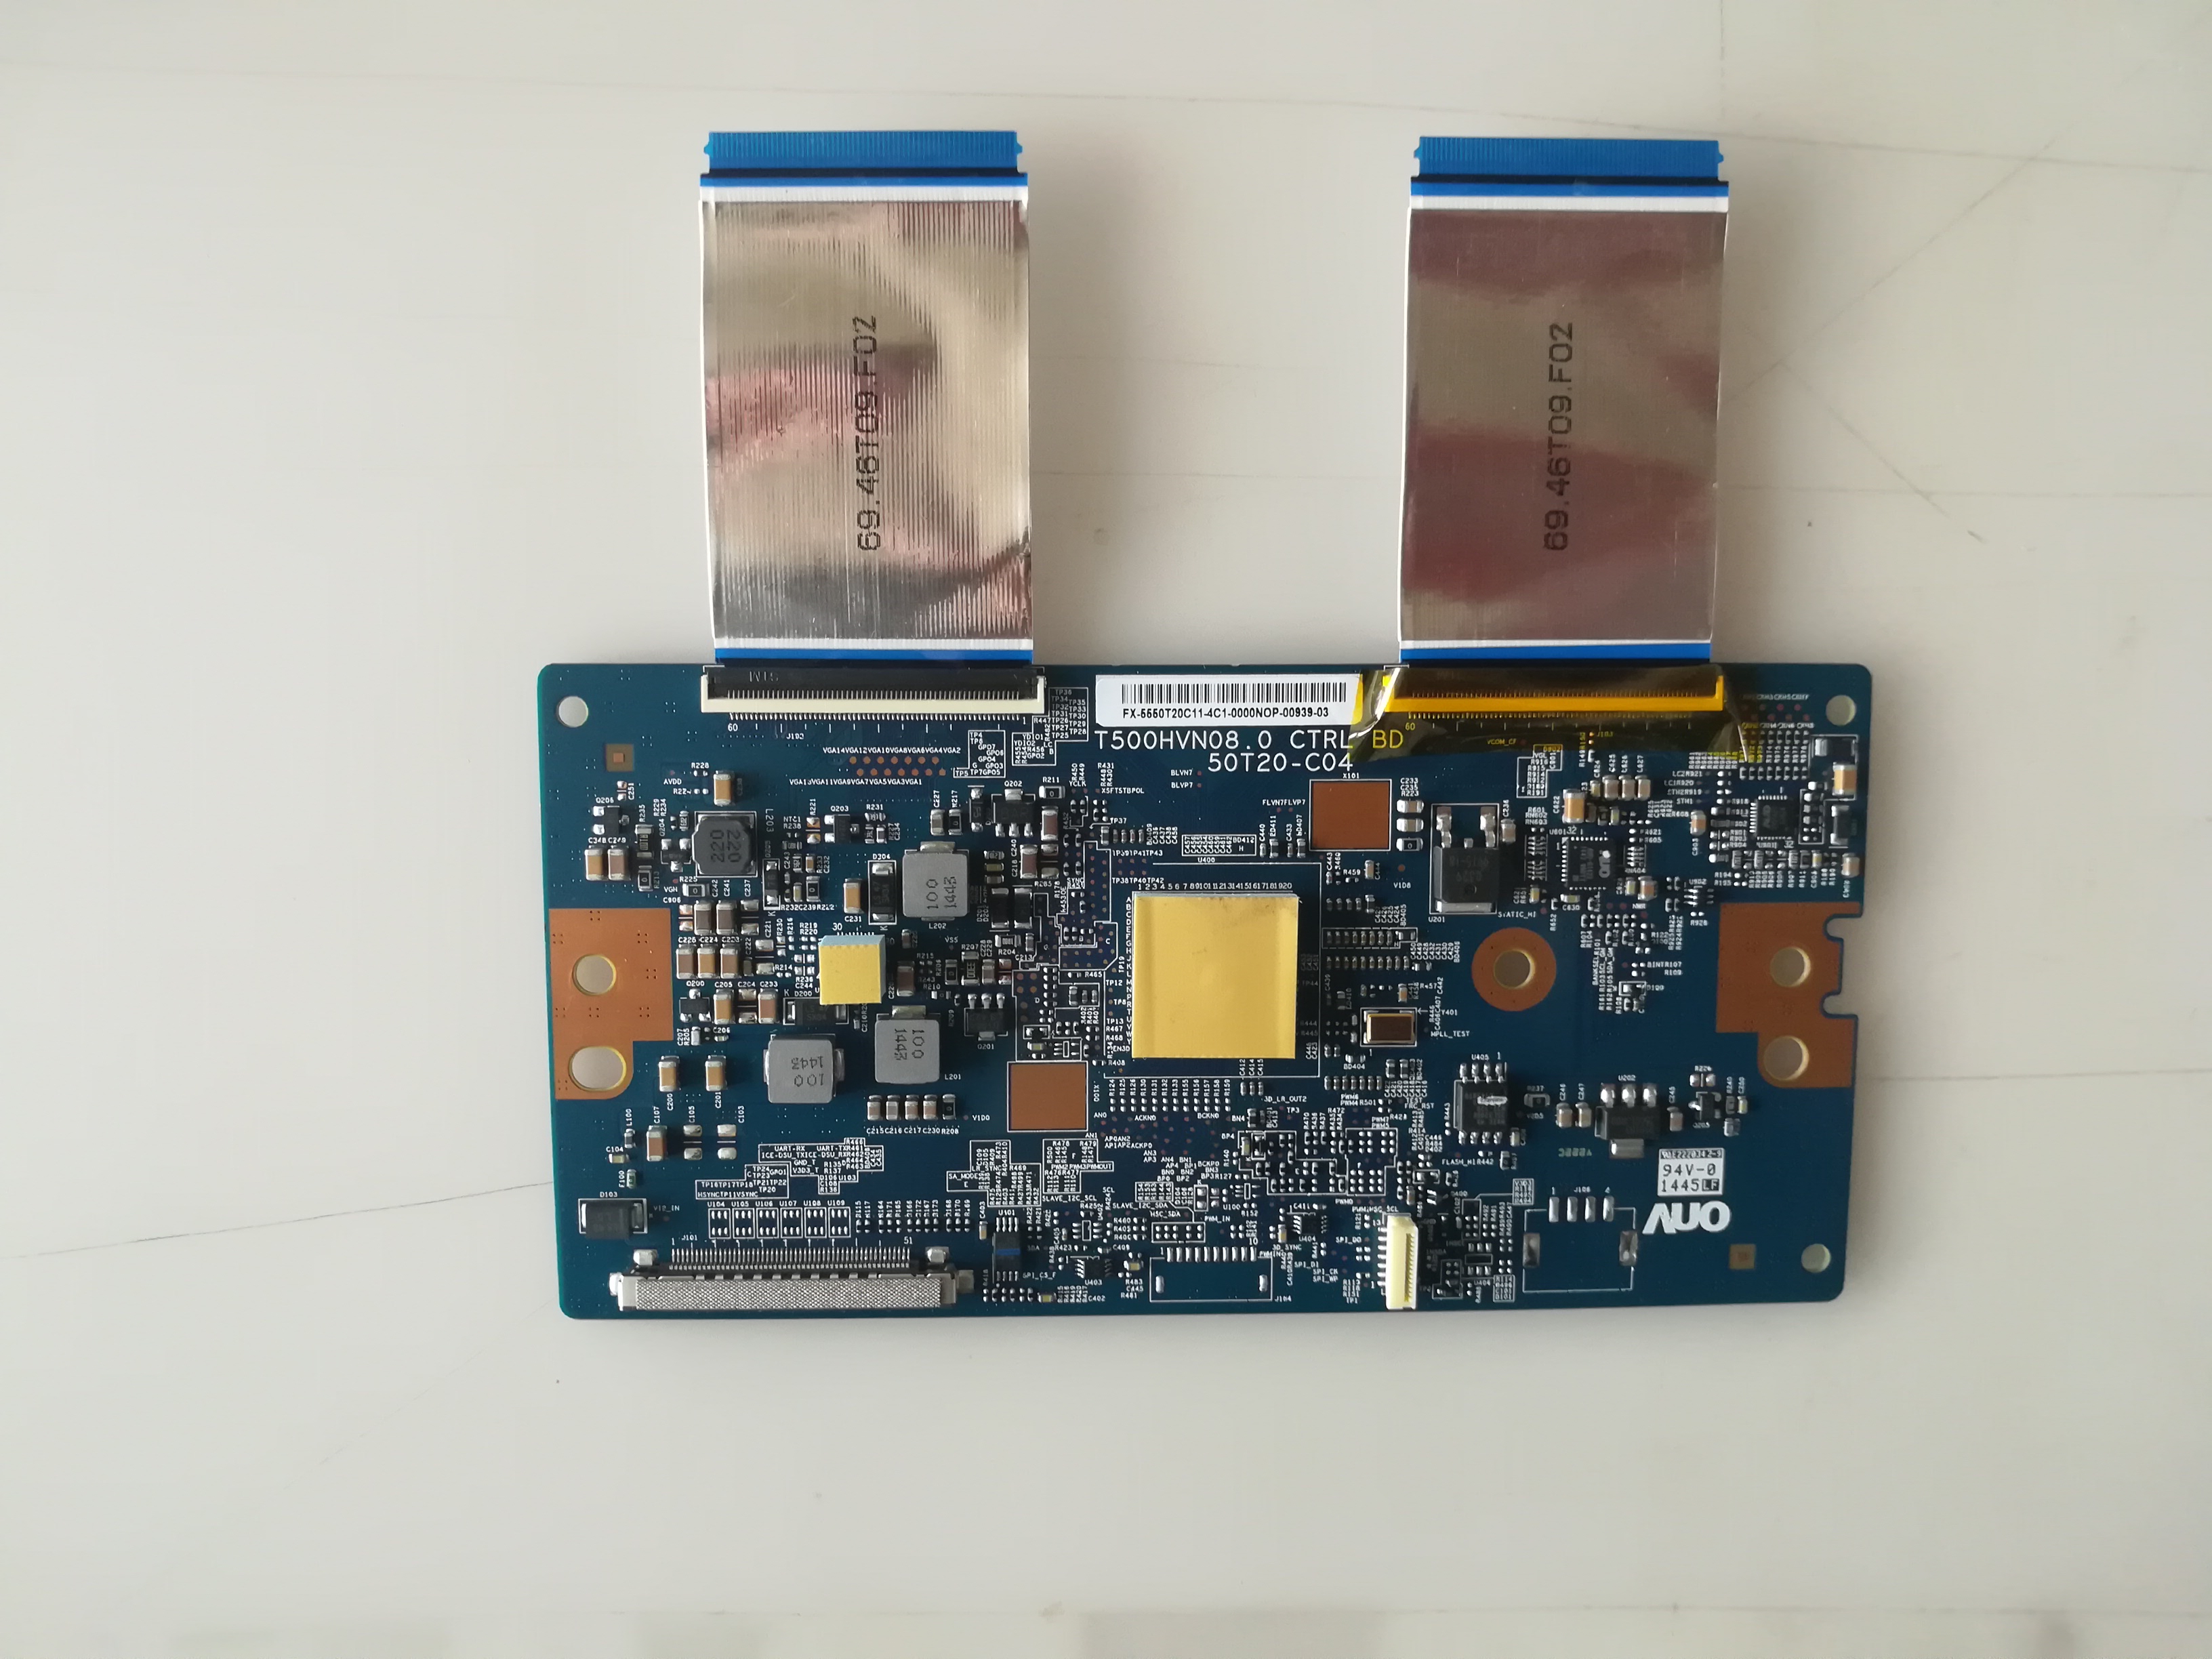 Sony KDL-50W800B logic board T500HVN08.0 CTRL BD 50T20-C04